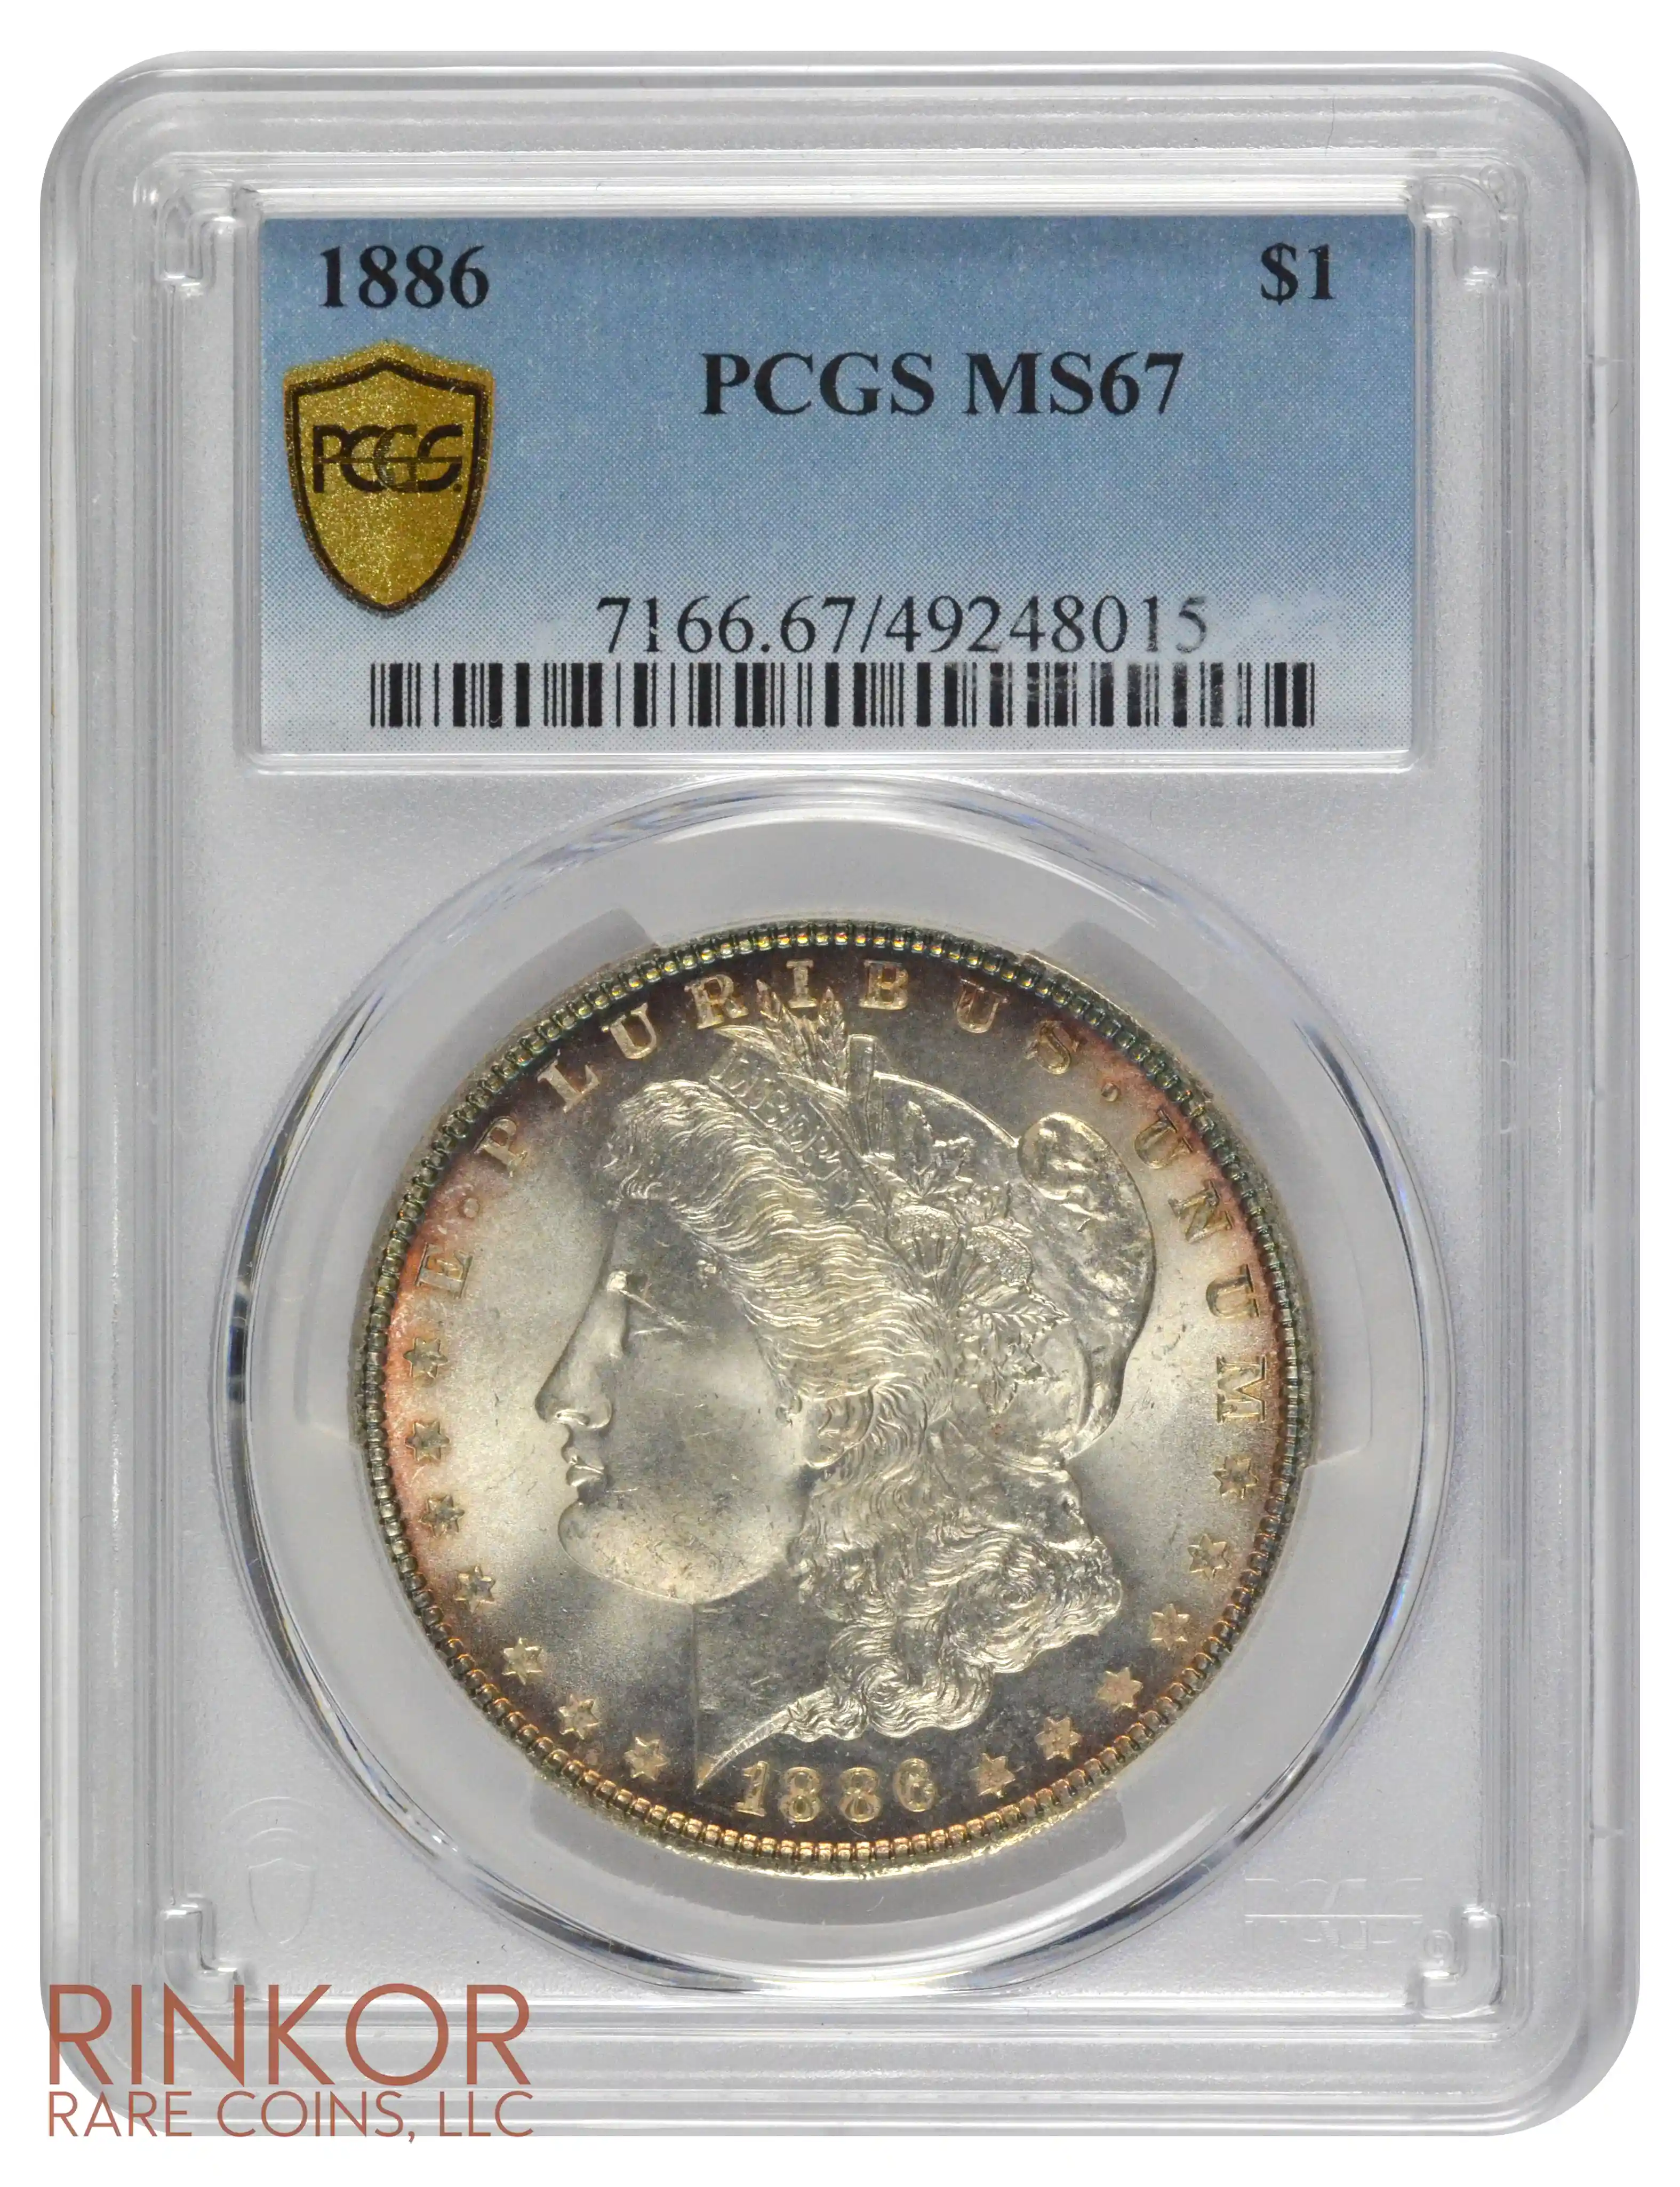 1886 $1 PCGS MS 67